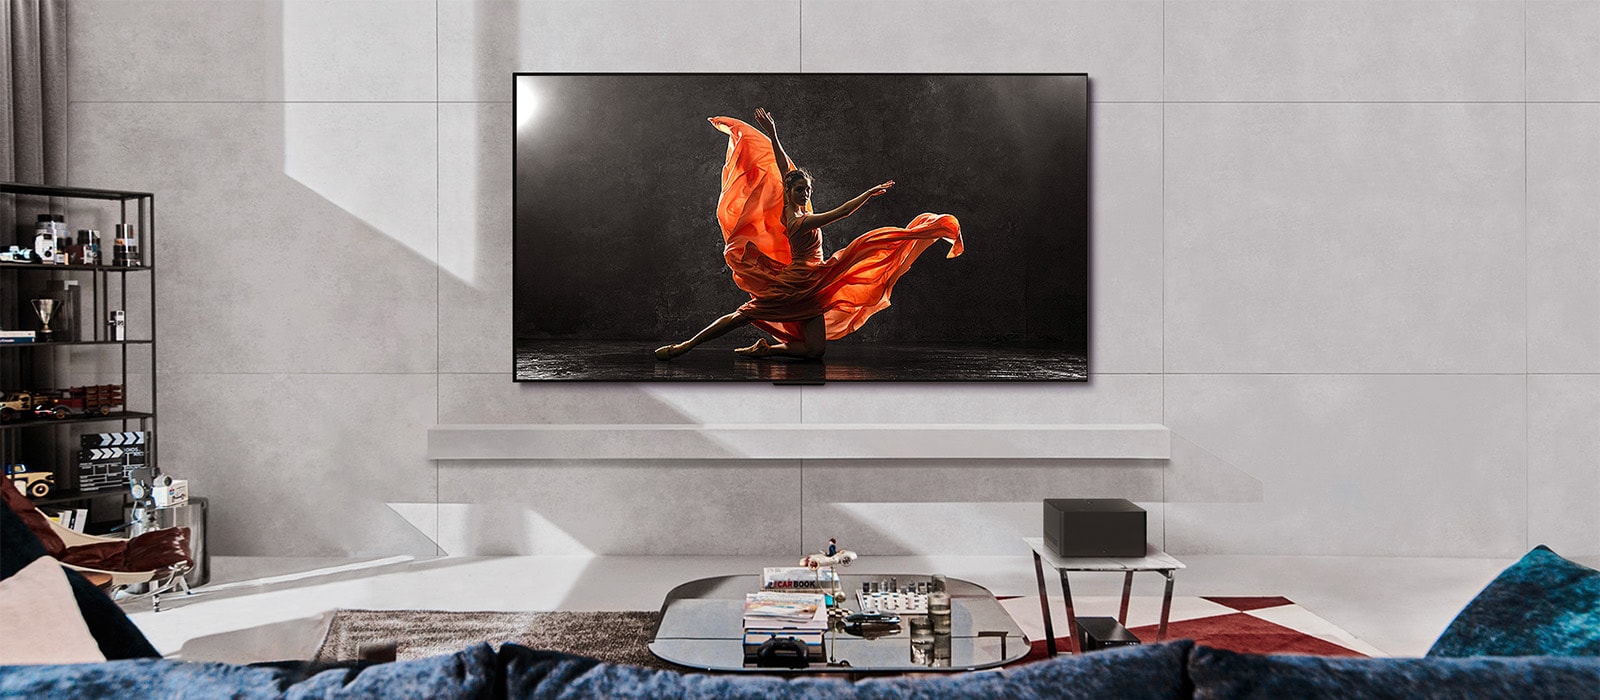 Un OLED LG SIGNATURE M4 et une LG Soundbar dans un salon moderne pendant la journée. L’écran affiche une image d’un danseur sur une scène sombre avec une luminosité idéale.